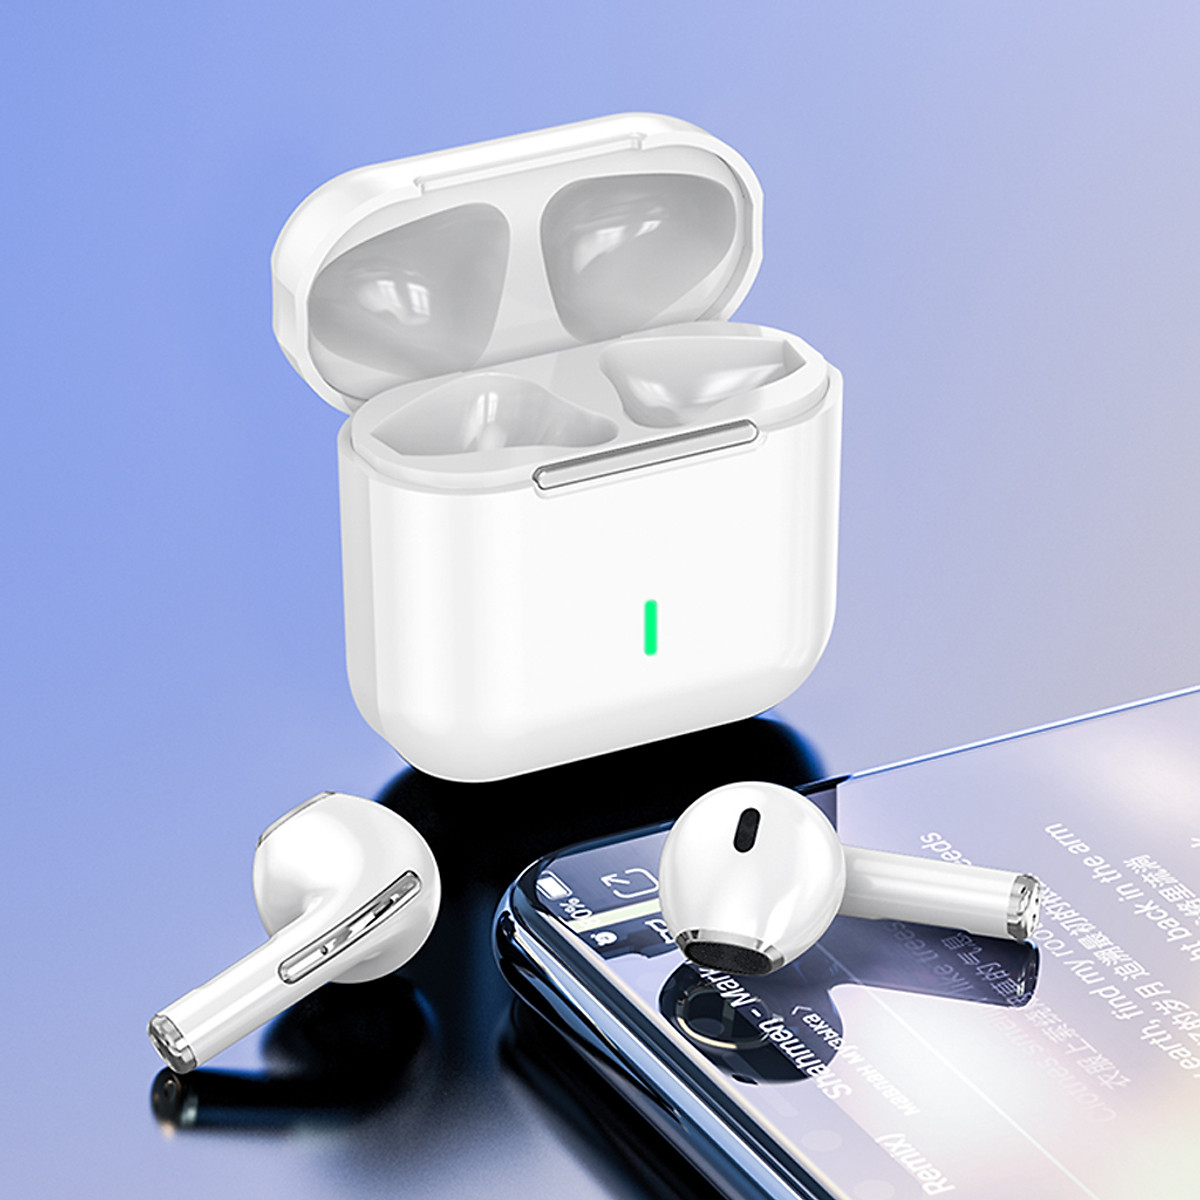 Tai Nghe True Wireless Smart Touch Bluetooth điều khiển cảm ứng hỗ trợ nghe đơn hoặc đôi 2 bên tai với micro HD chống ồn dành cho smartphones - Hàng Chính Hãng